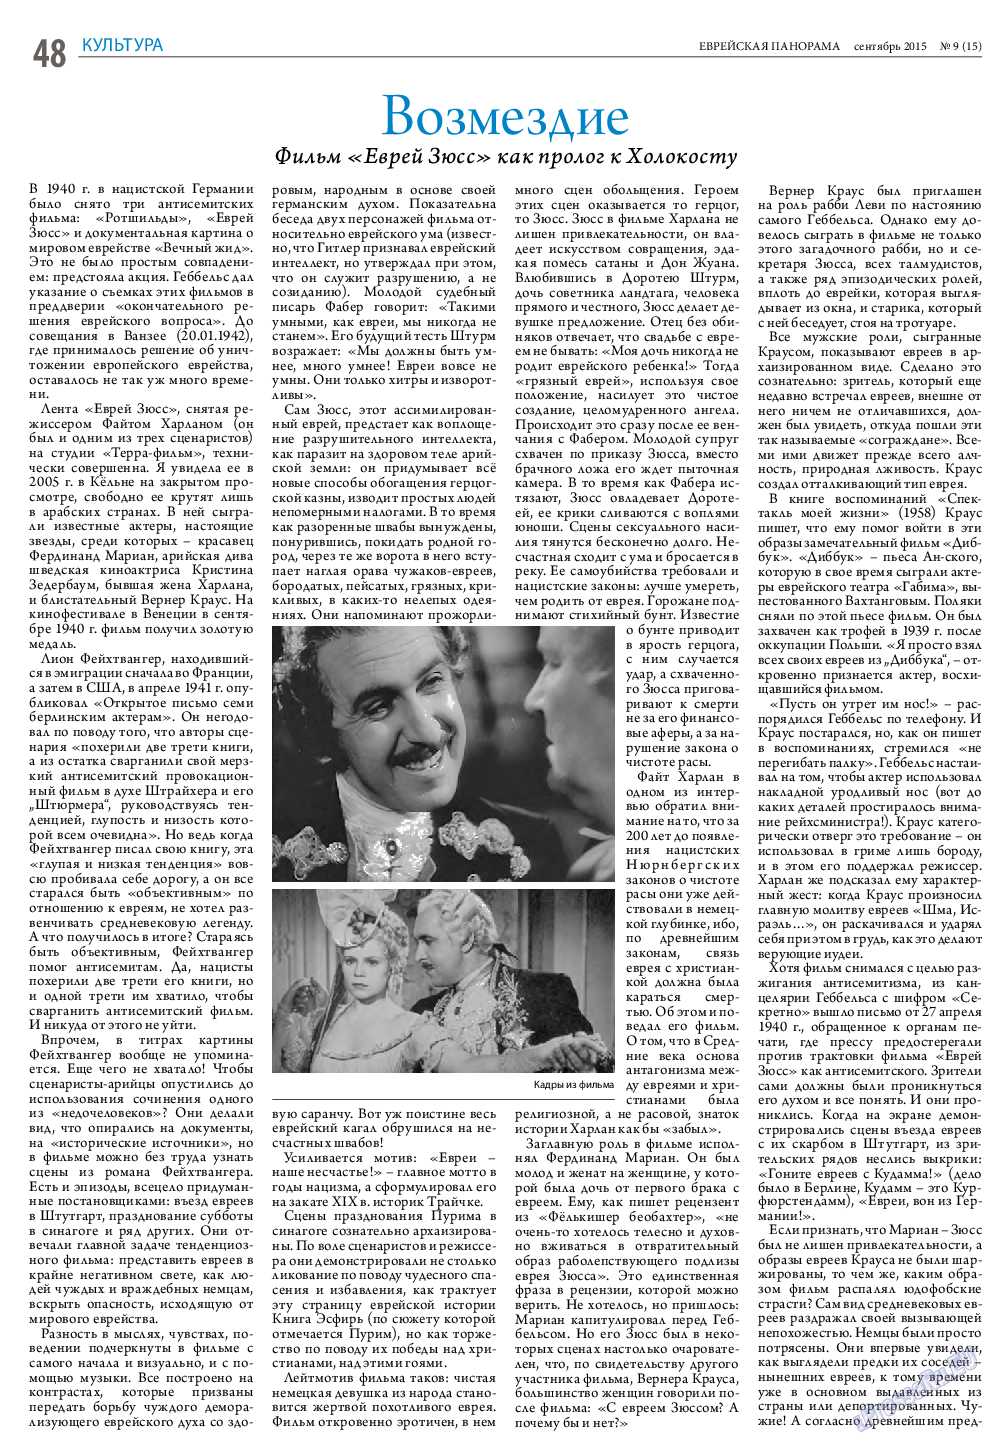 Еврейская панорама (газета). 2015 год, номер 9, стр. 48